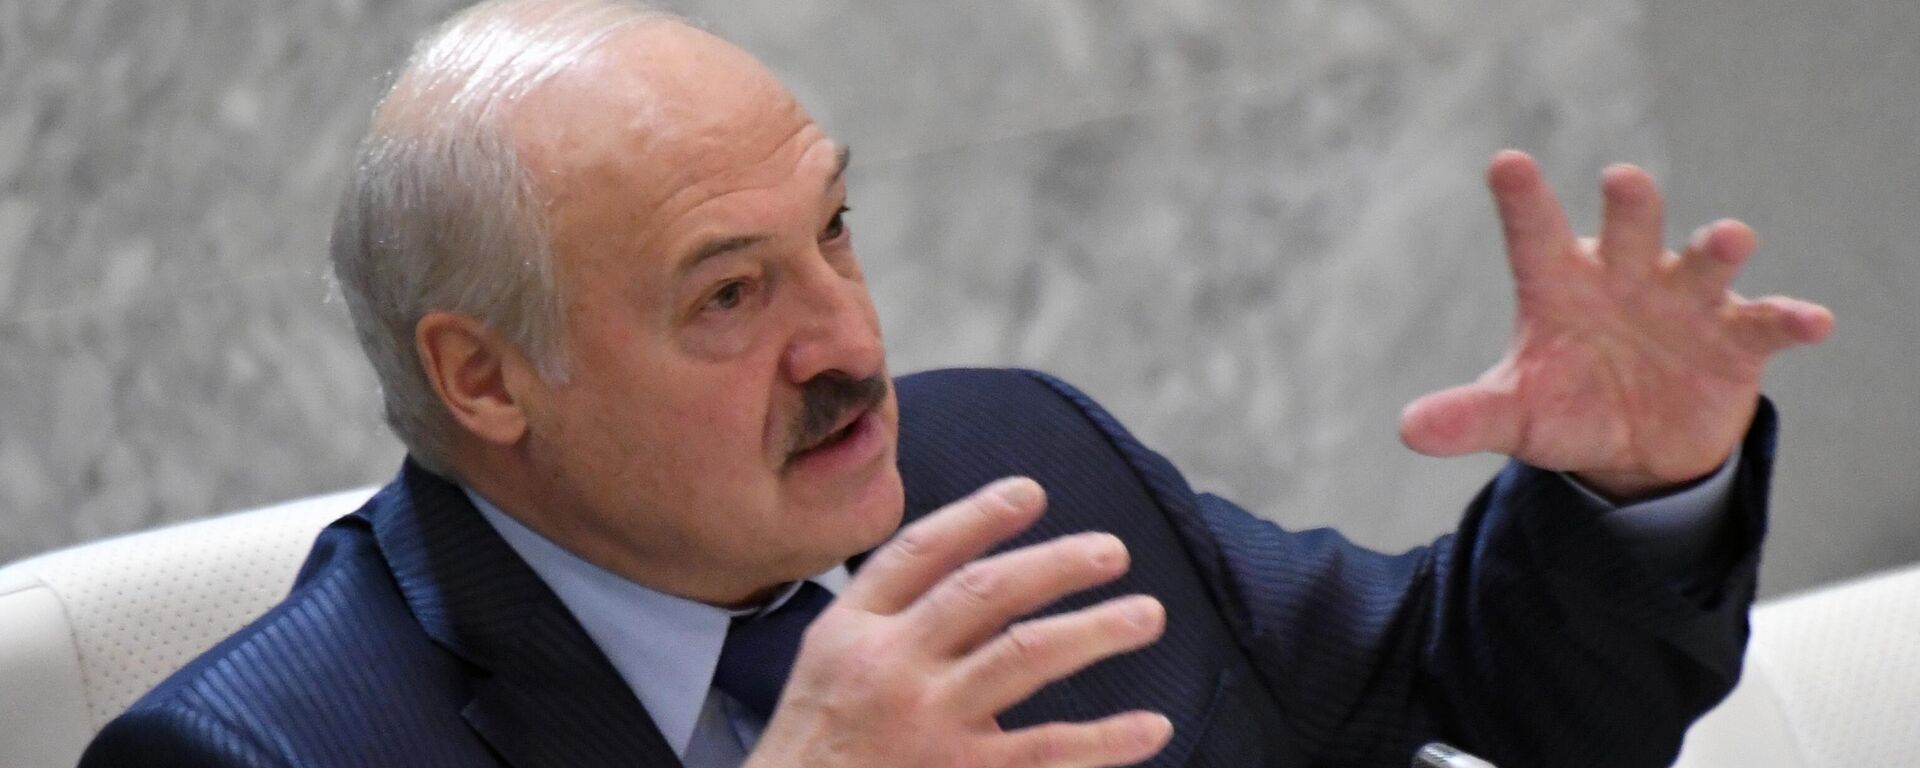 Alexandr Lukashenko, el presidente de Bielorrusia - Sputnik Mundo, 1920, 13.10.2022